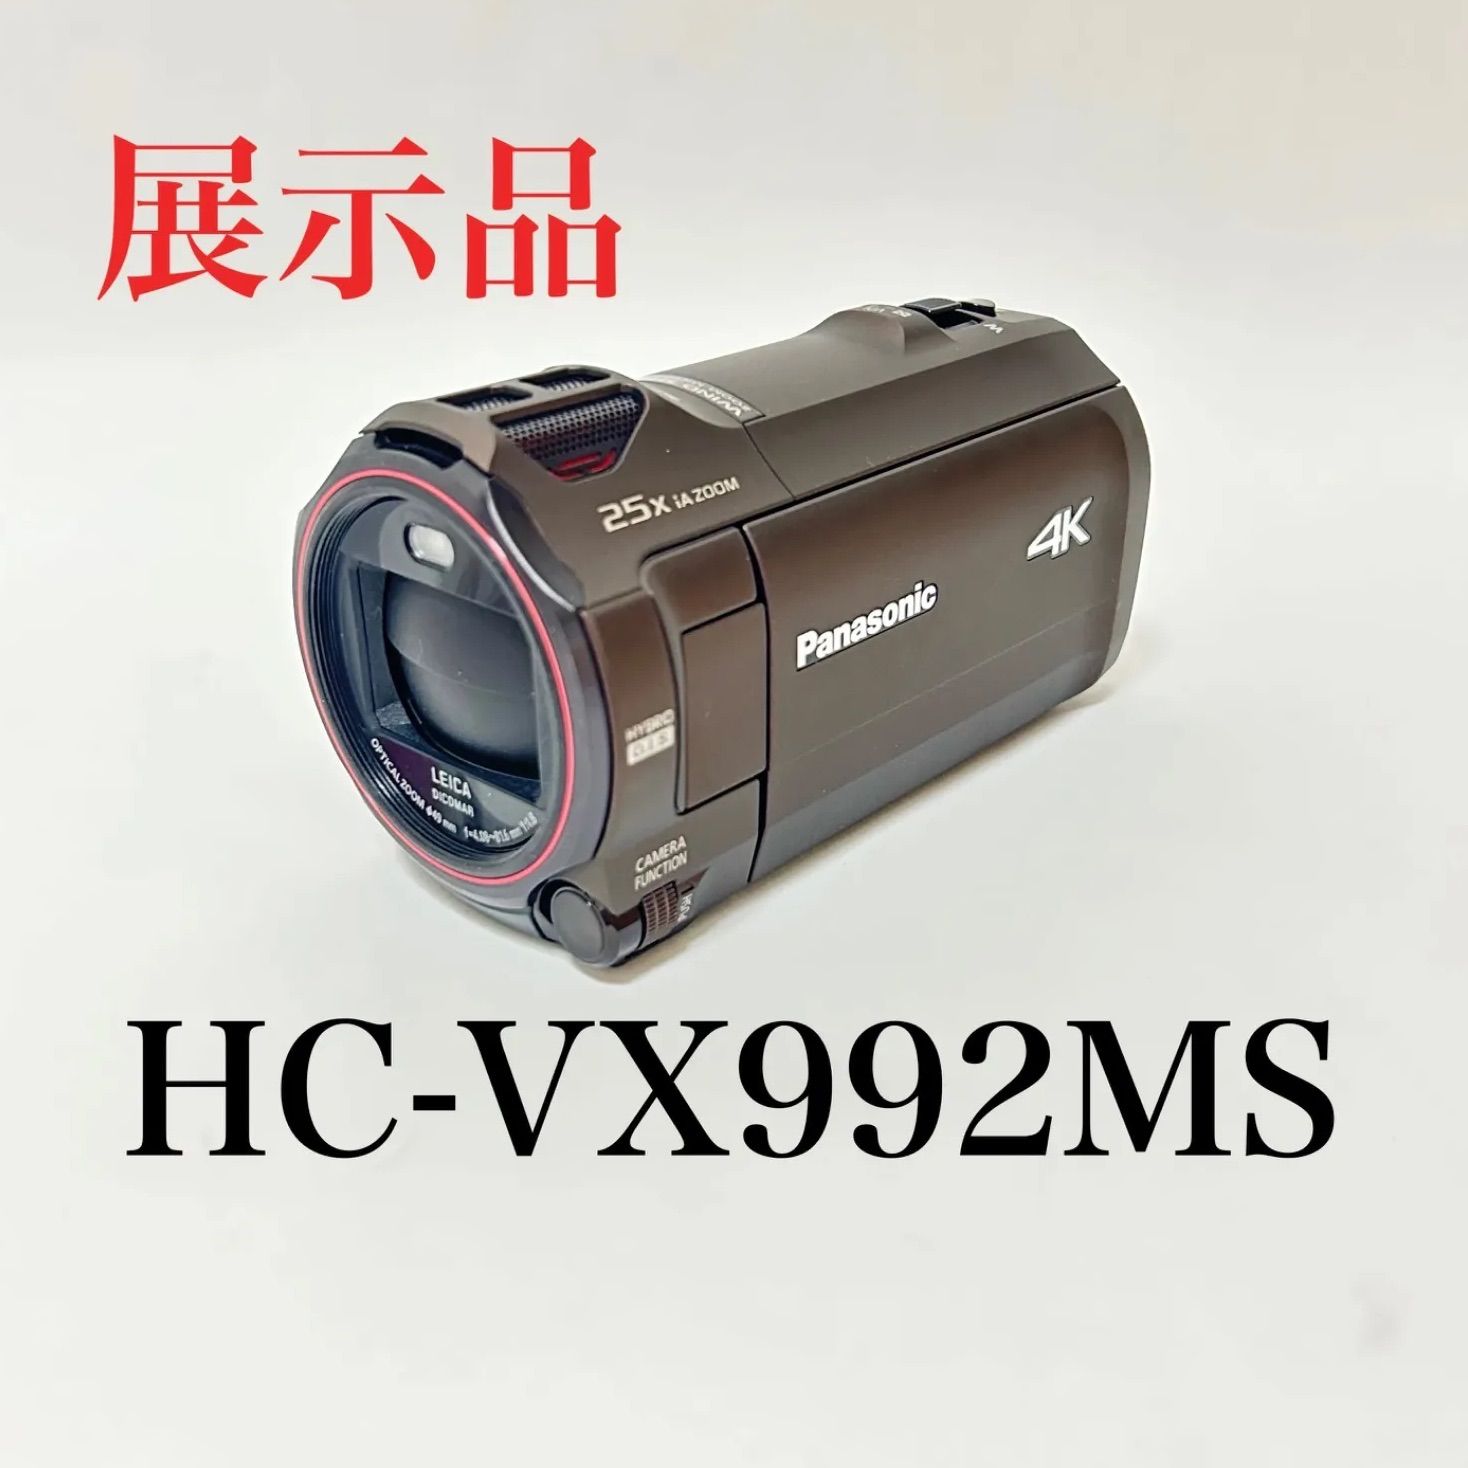 パナソニック デジタルビデオカメラ HC-VX992MS-T ブラウン 店頭展示品 - メルカリ